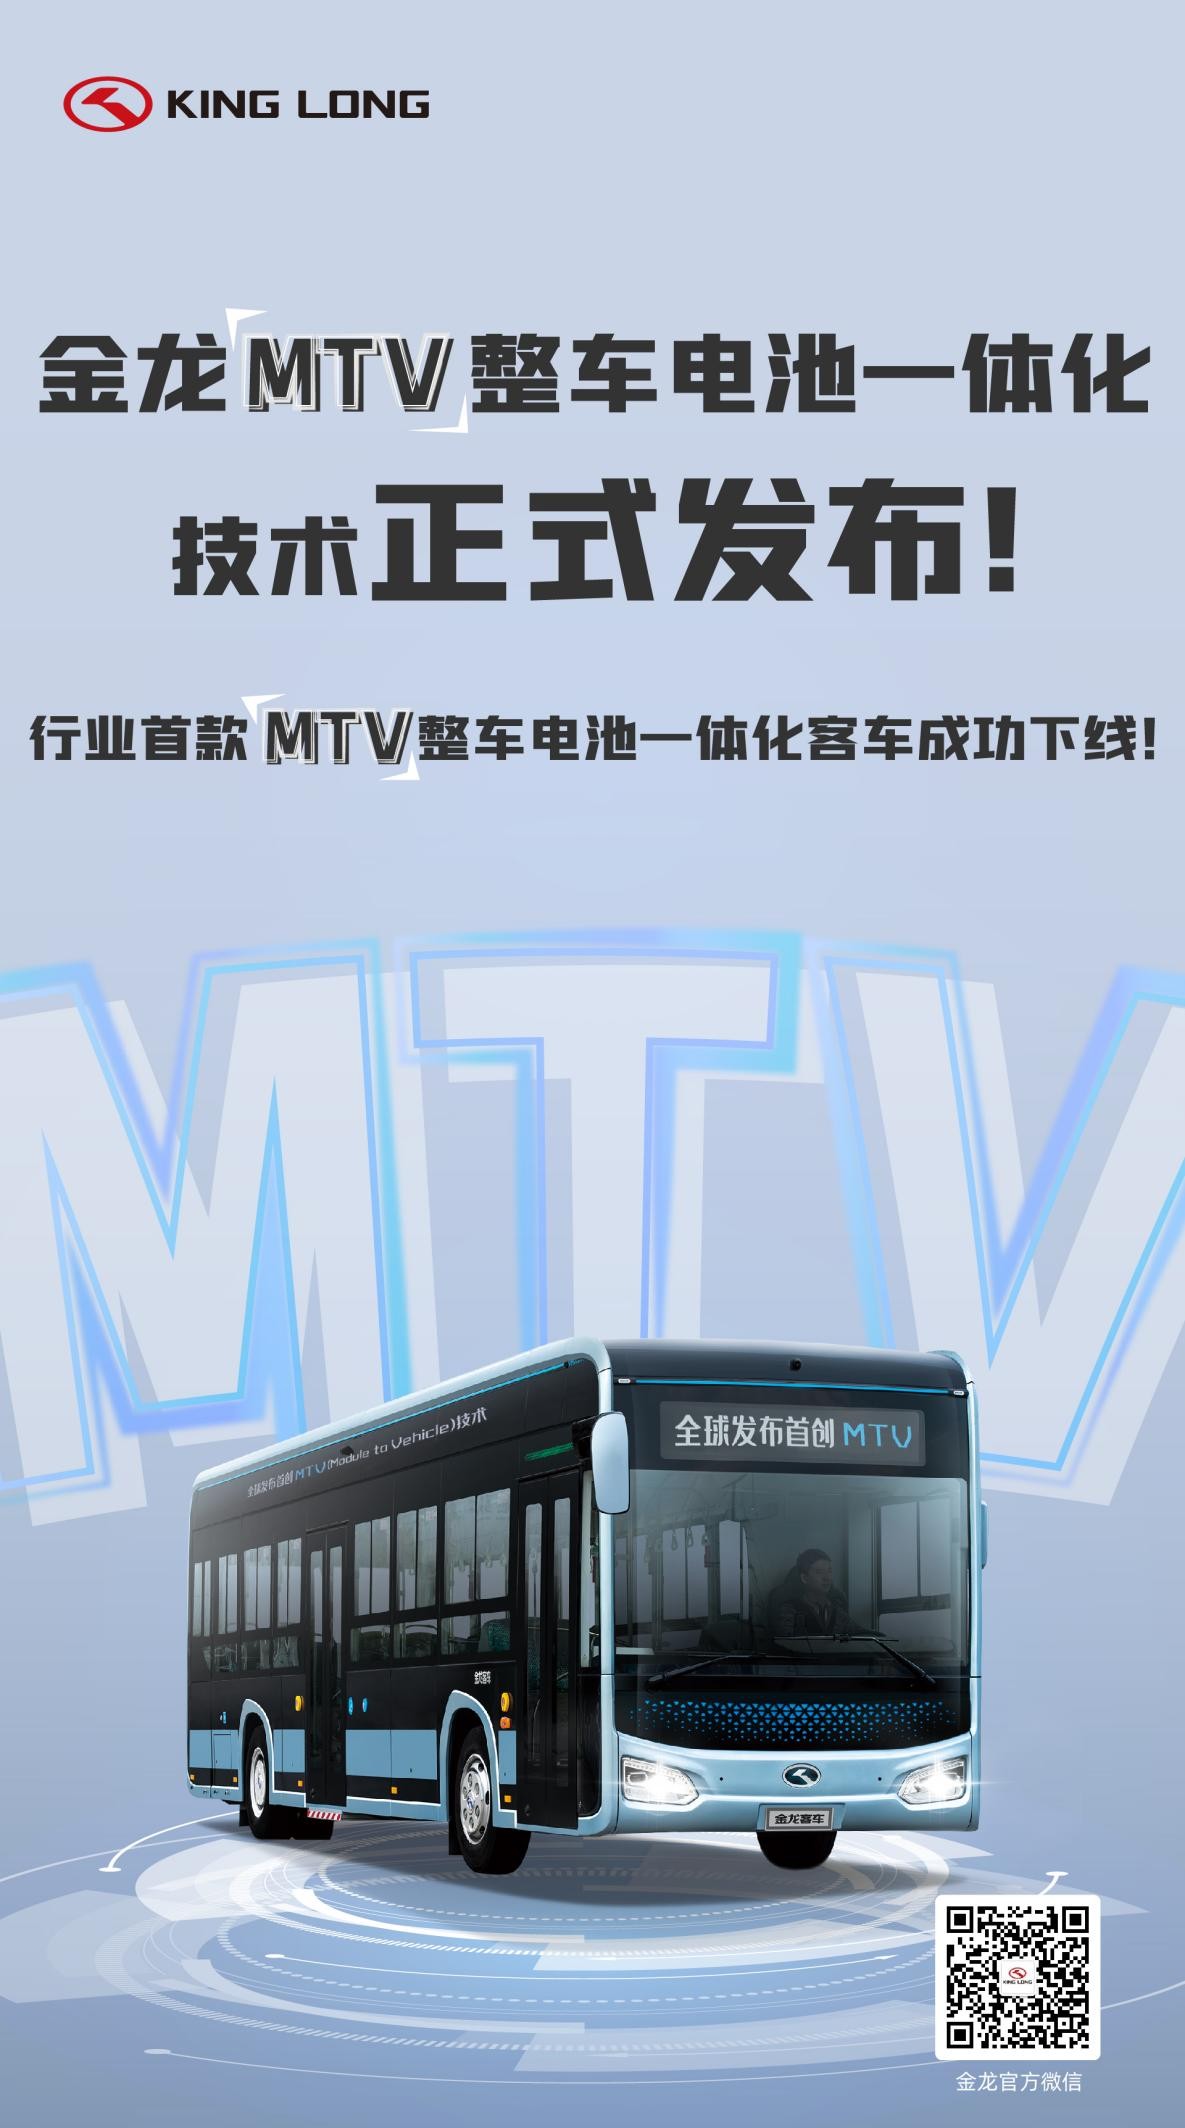 金龙MTV整车电池一体化技术正式发布暨行业首款MTV客车成功下线！